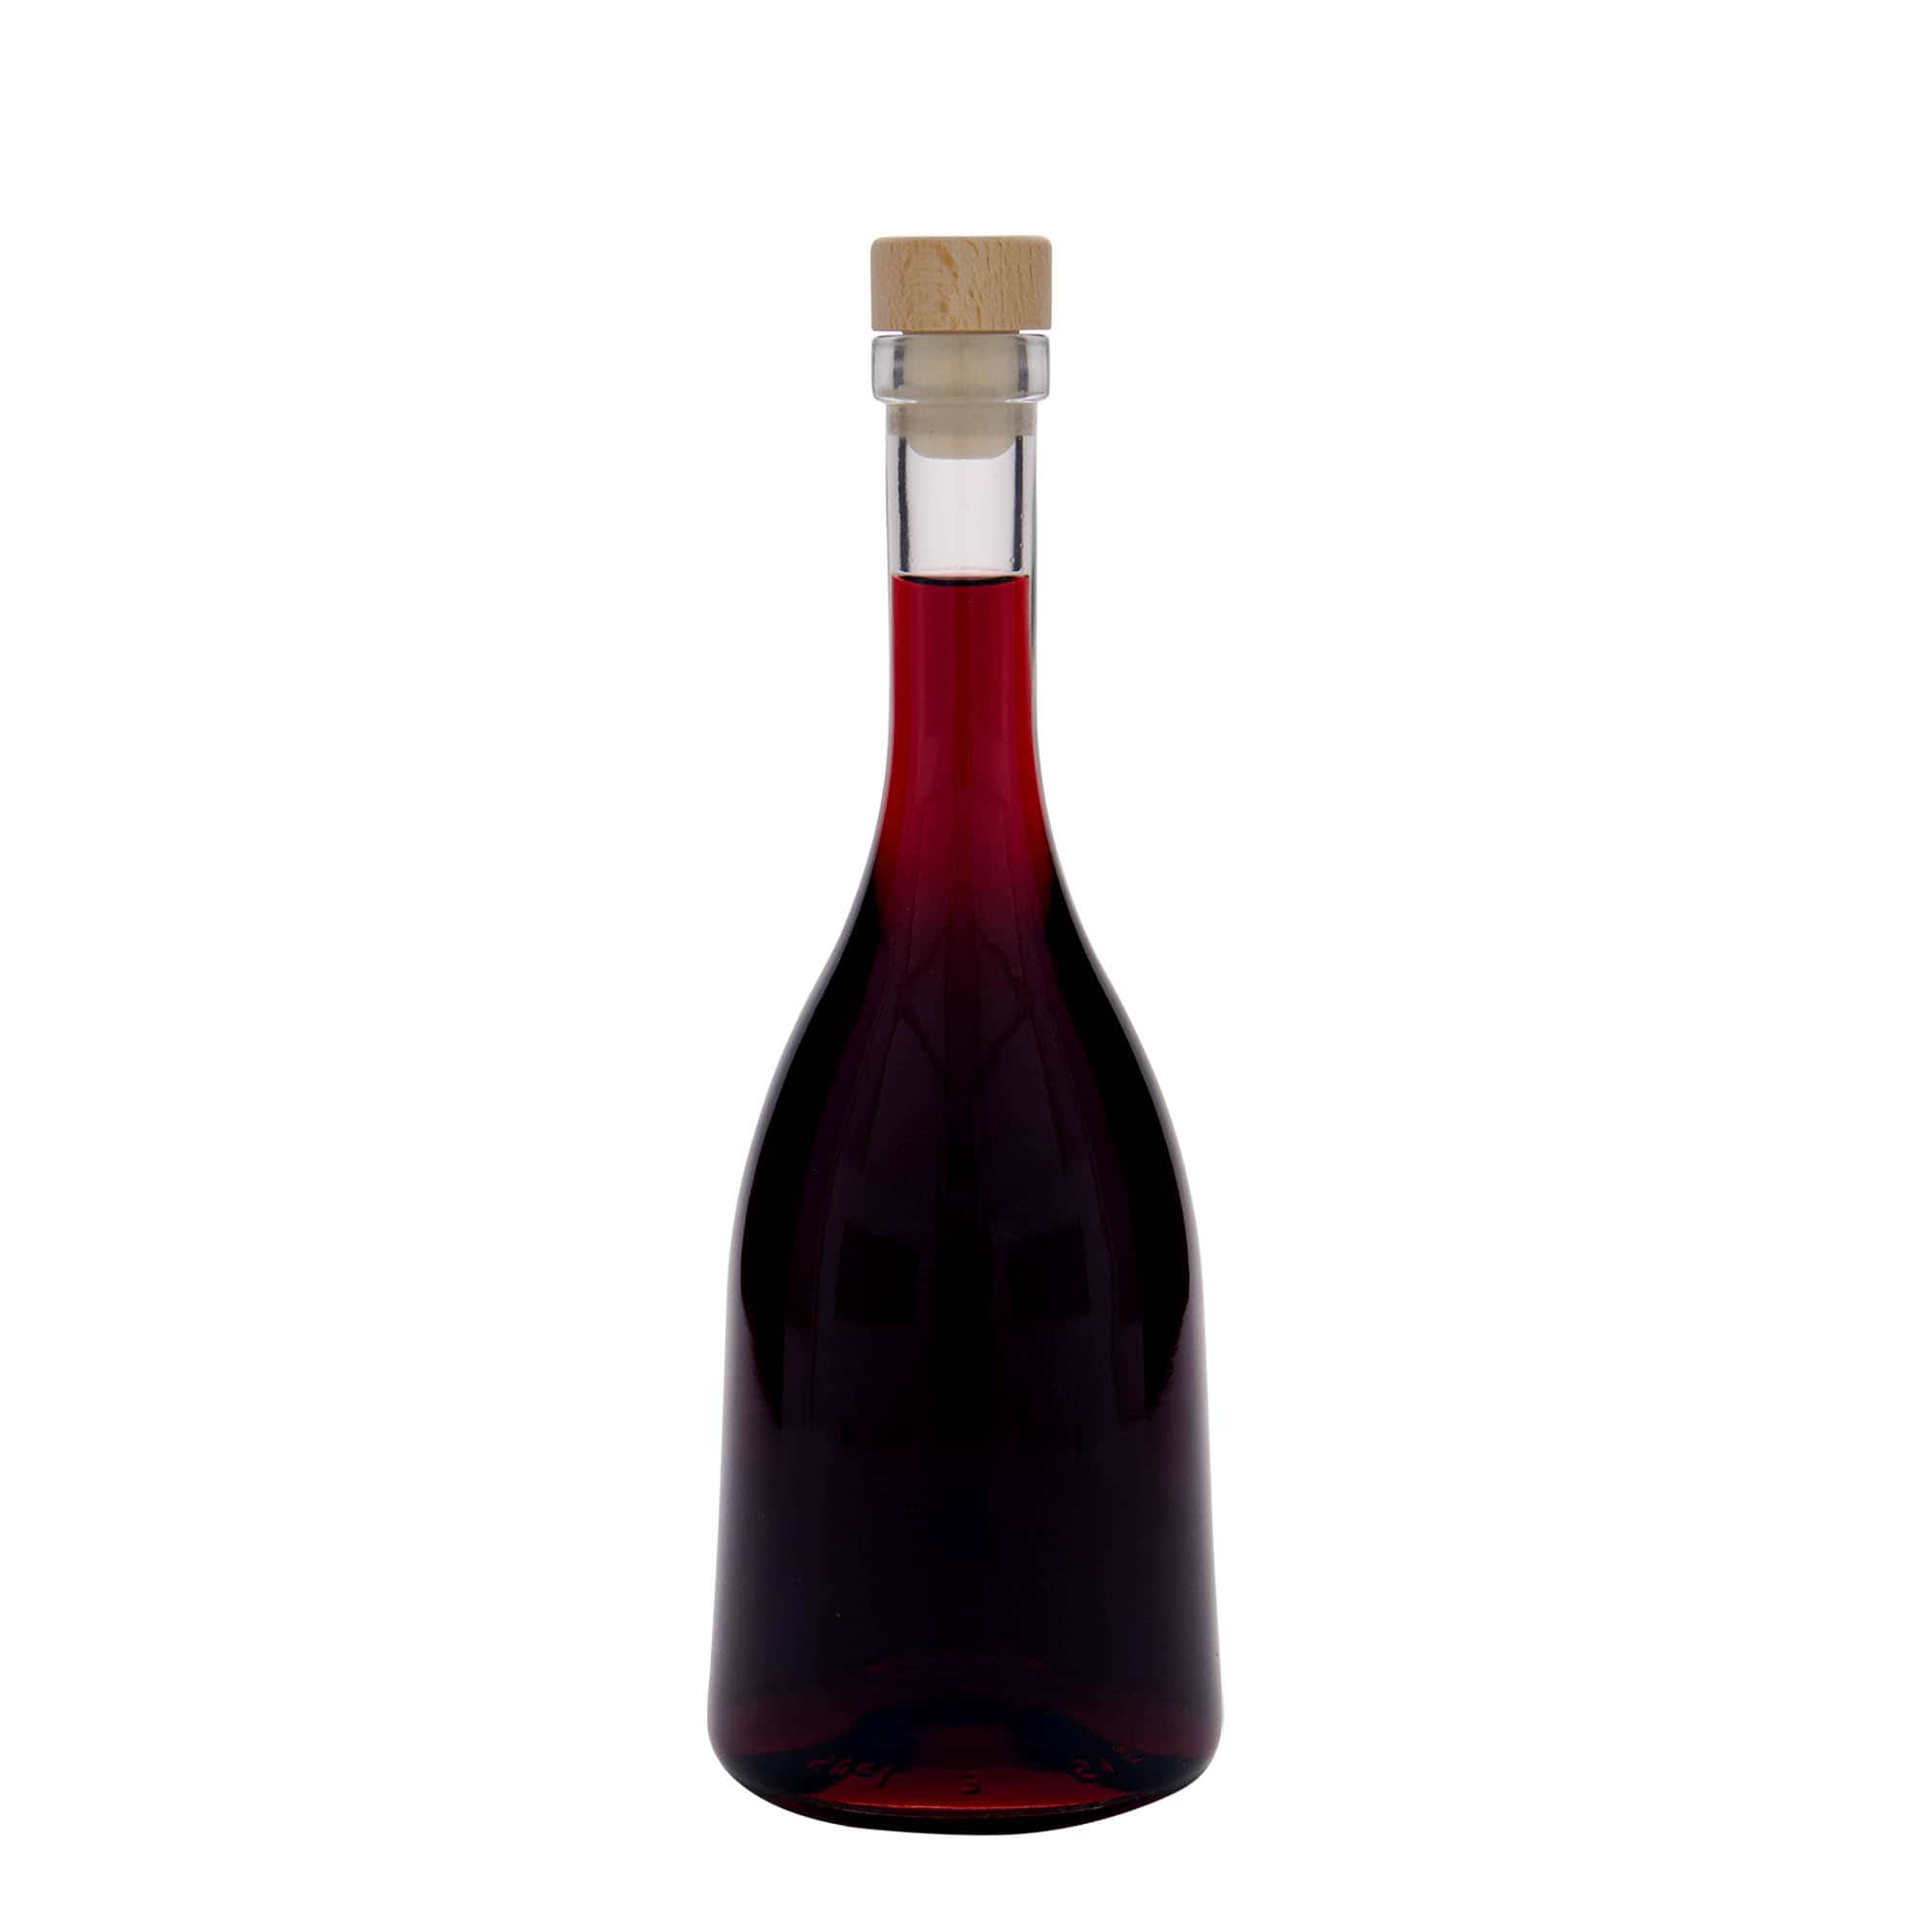 500 ml glass bottle 'Rustica', closure: cork